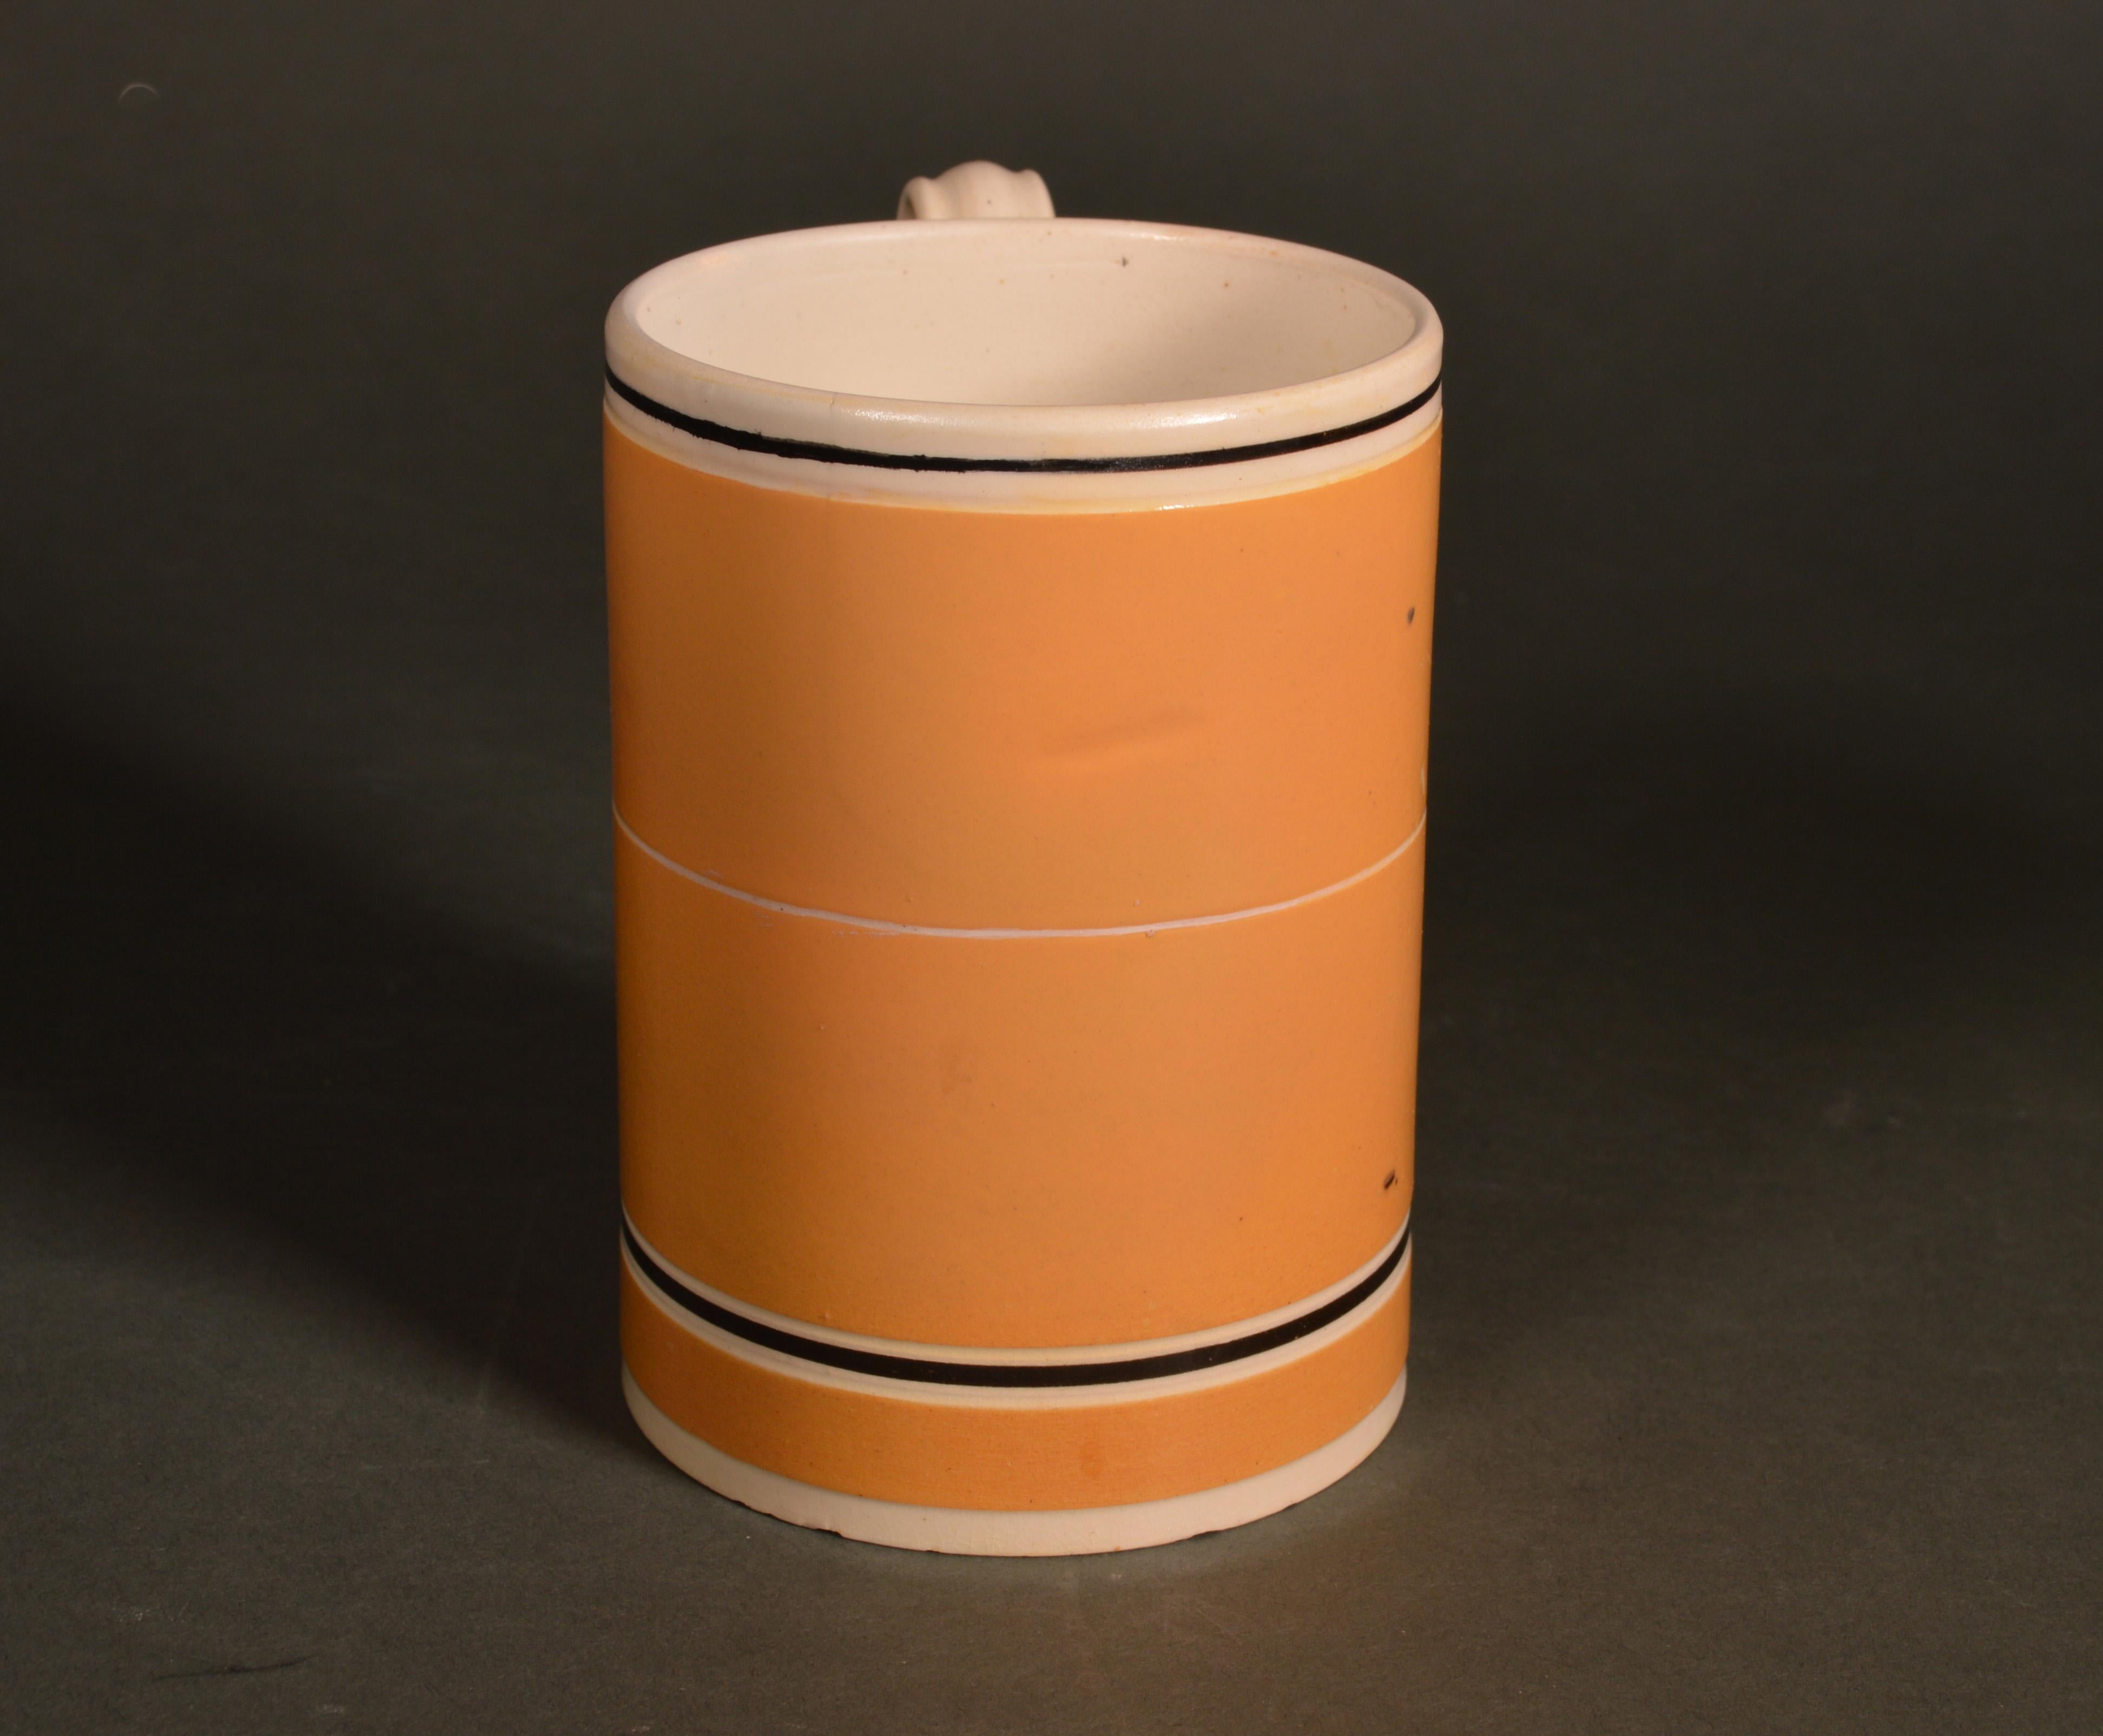 Tasse en poterie moka avec un fond d'engobe ocre,
vers 1790-1810
  

La tasse cylindrique avec un pied évasé a un fond d'engobe de couleur ocre avec une large bande blanche sur le bord et une étroite ligne brune entourant le corps. Une autre